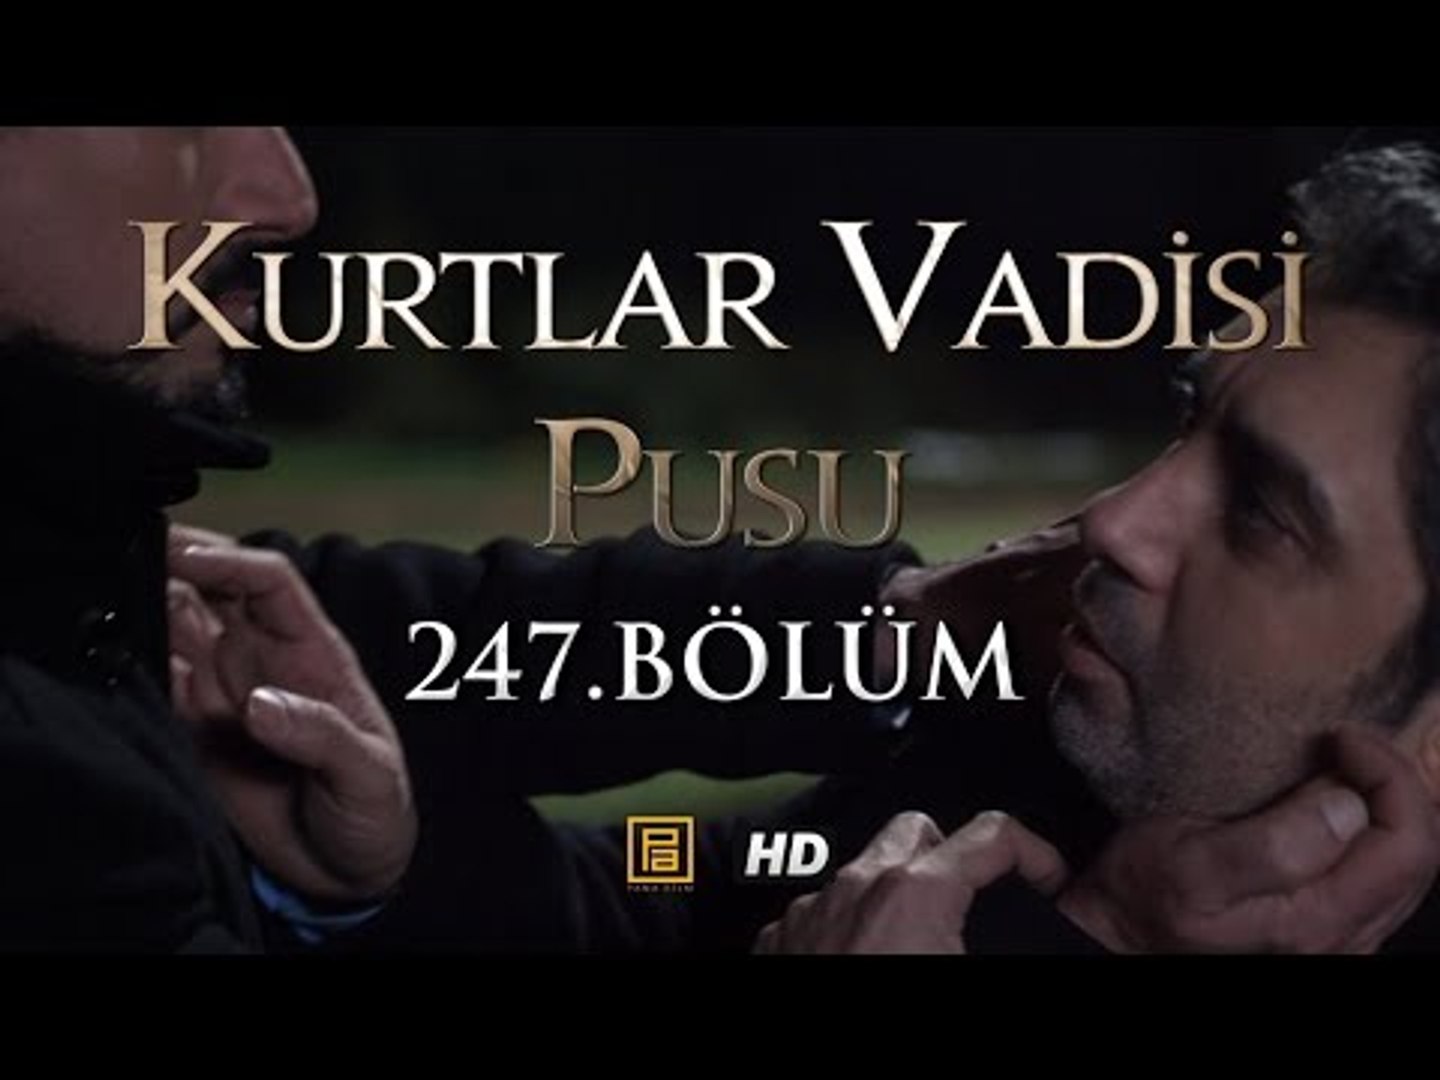 Kurtlar Vadisi Pusu 247. Bölüm HD | English Subtitles | ترجمة إلى العربية -  Dailymotion Video